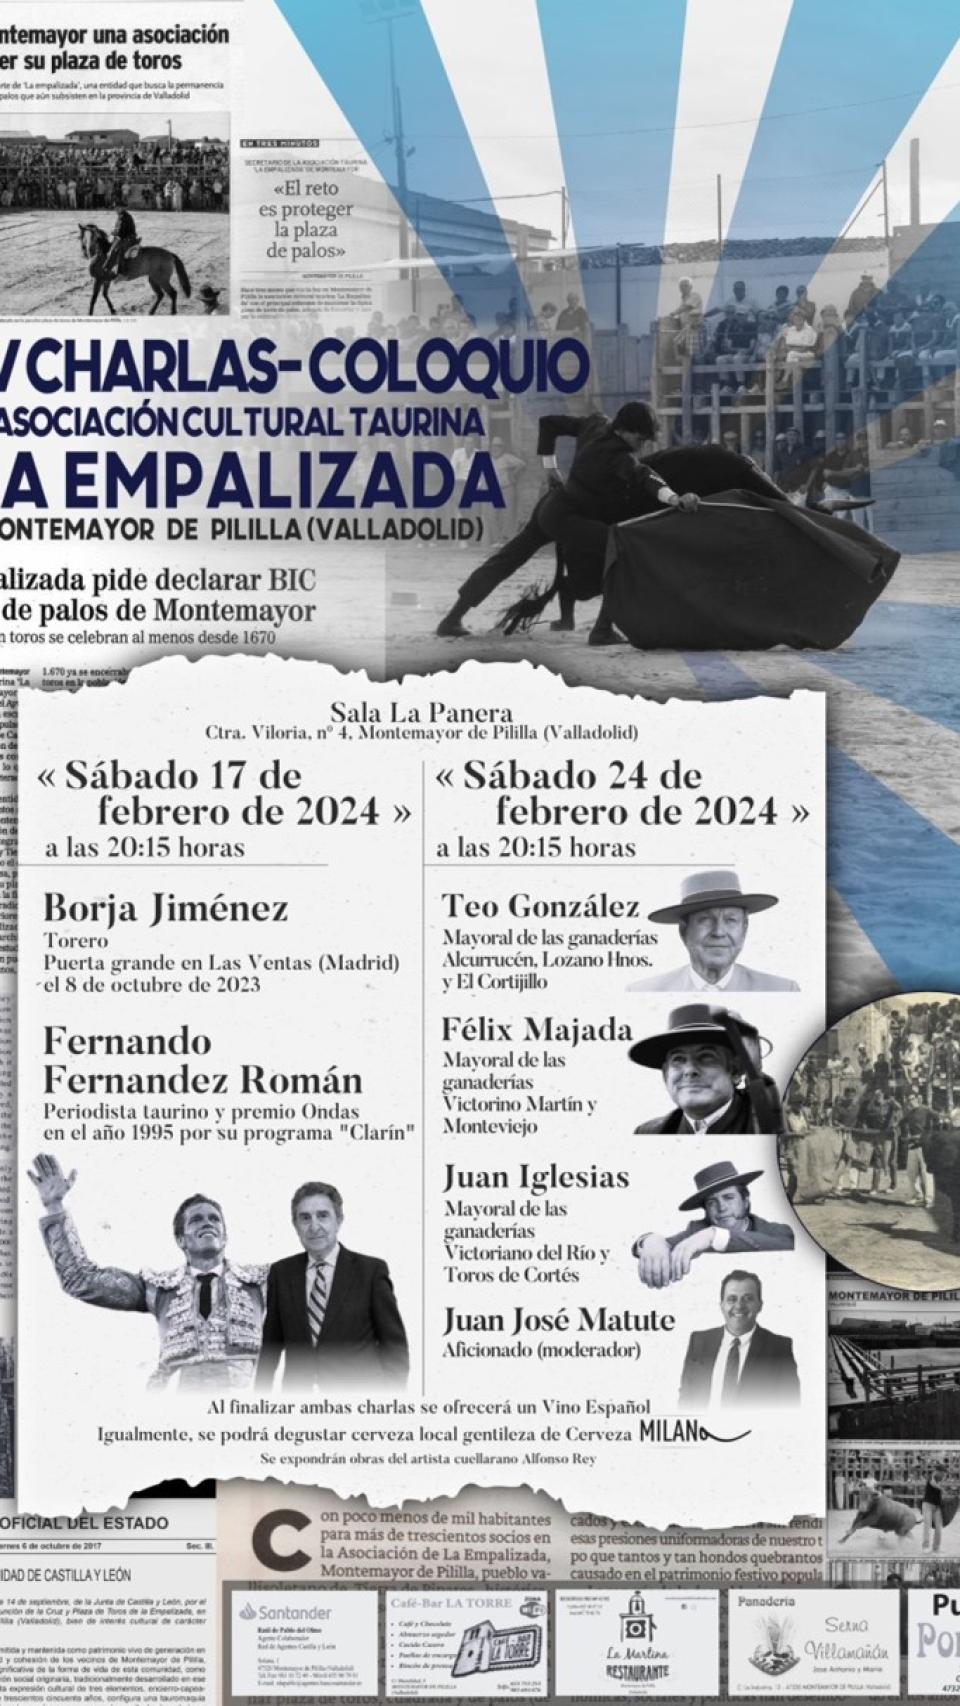 Cartel anunciador de las XV Jornadas de La Empalizada (diseño Diego Olmedo)